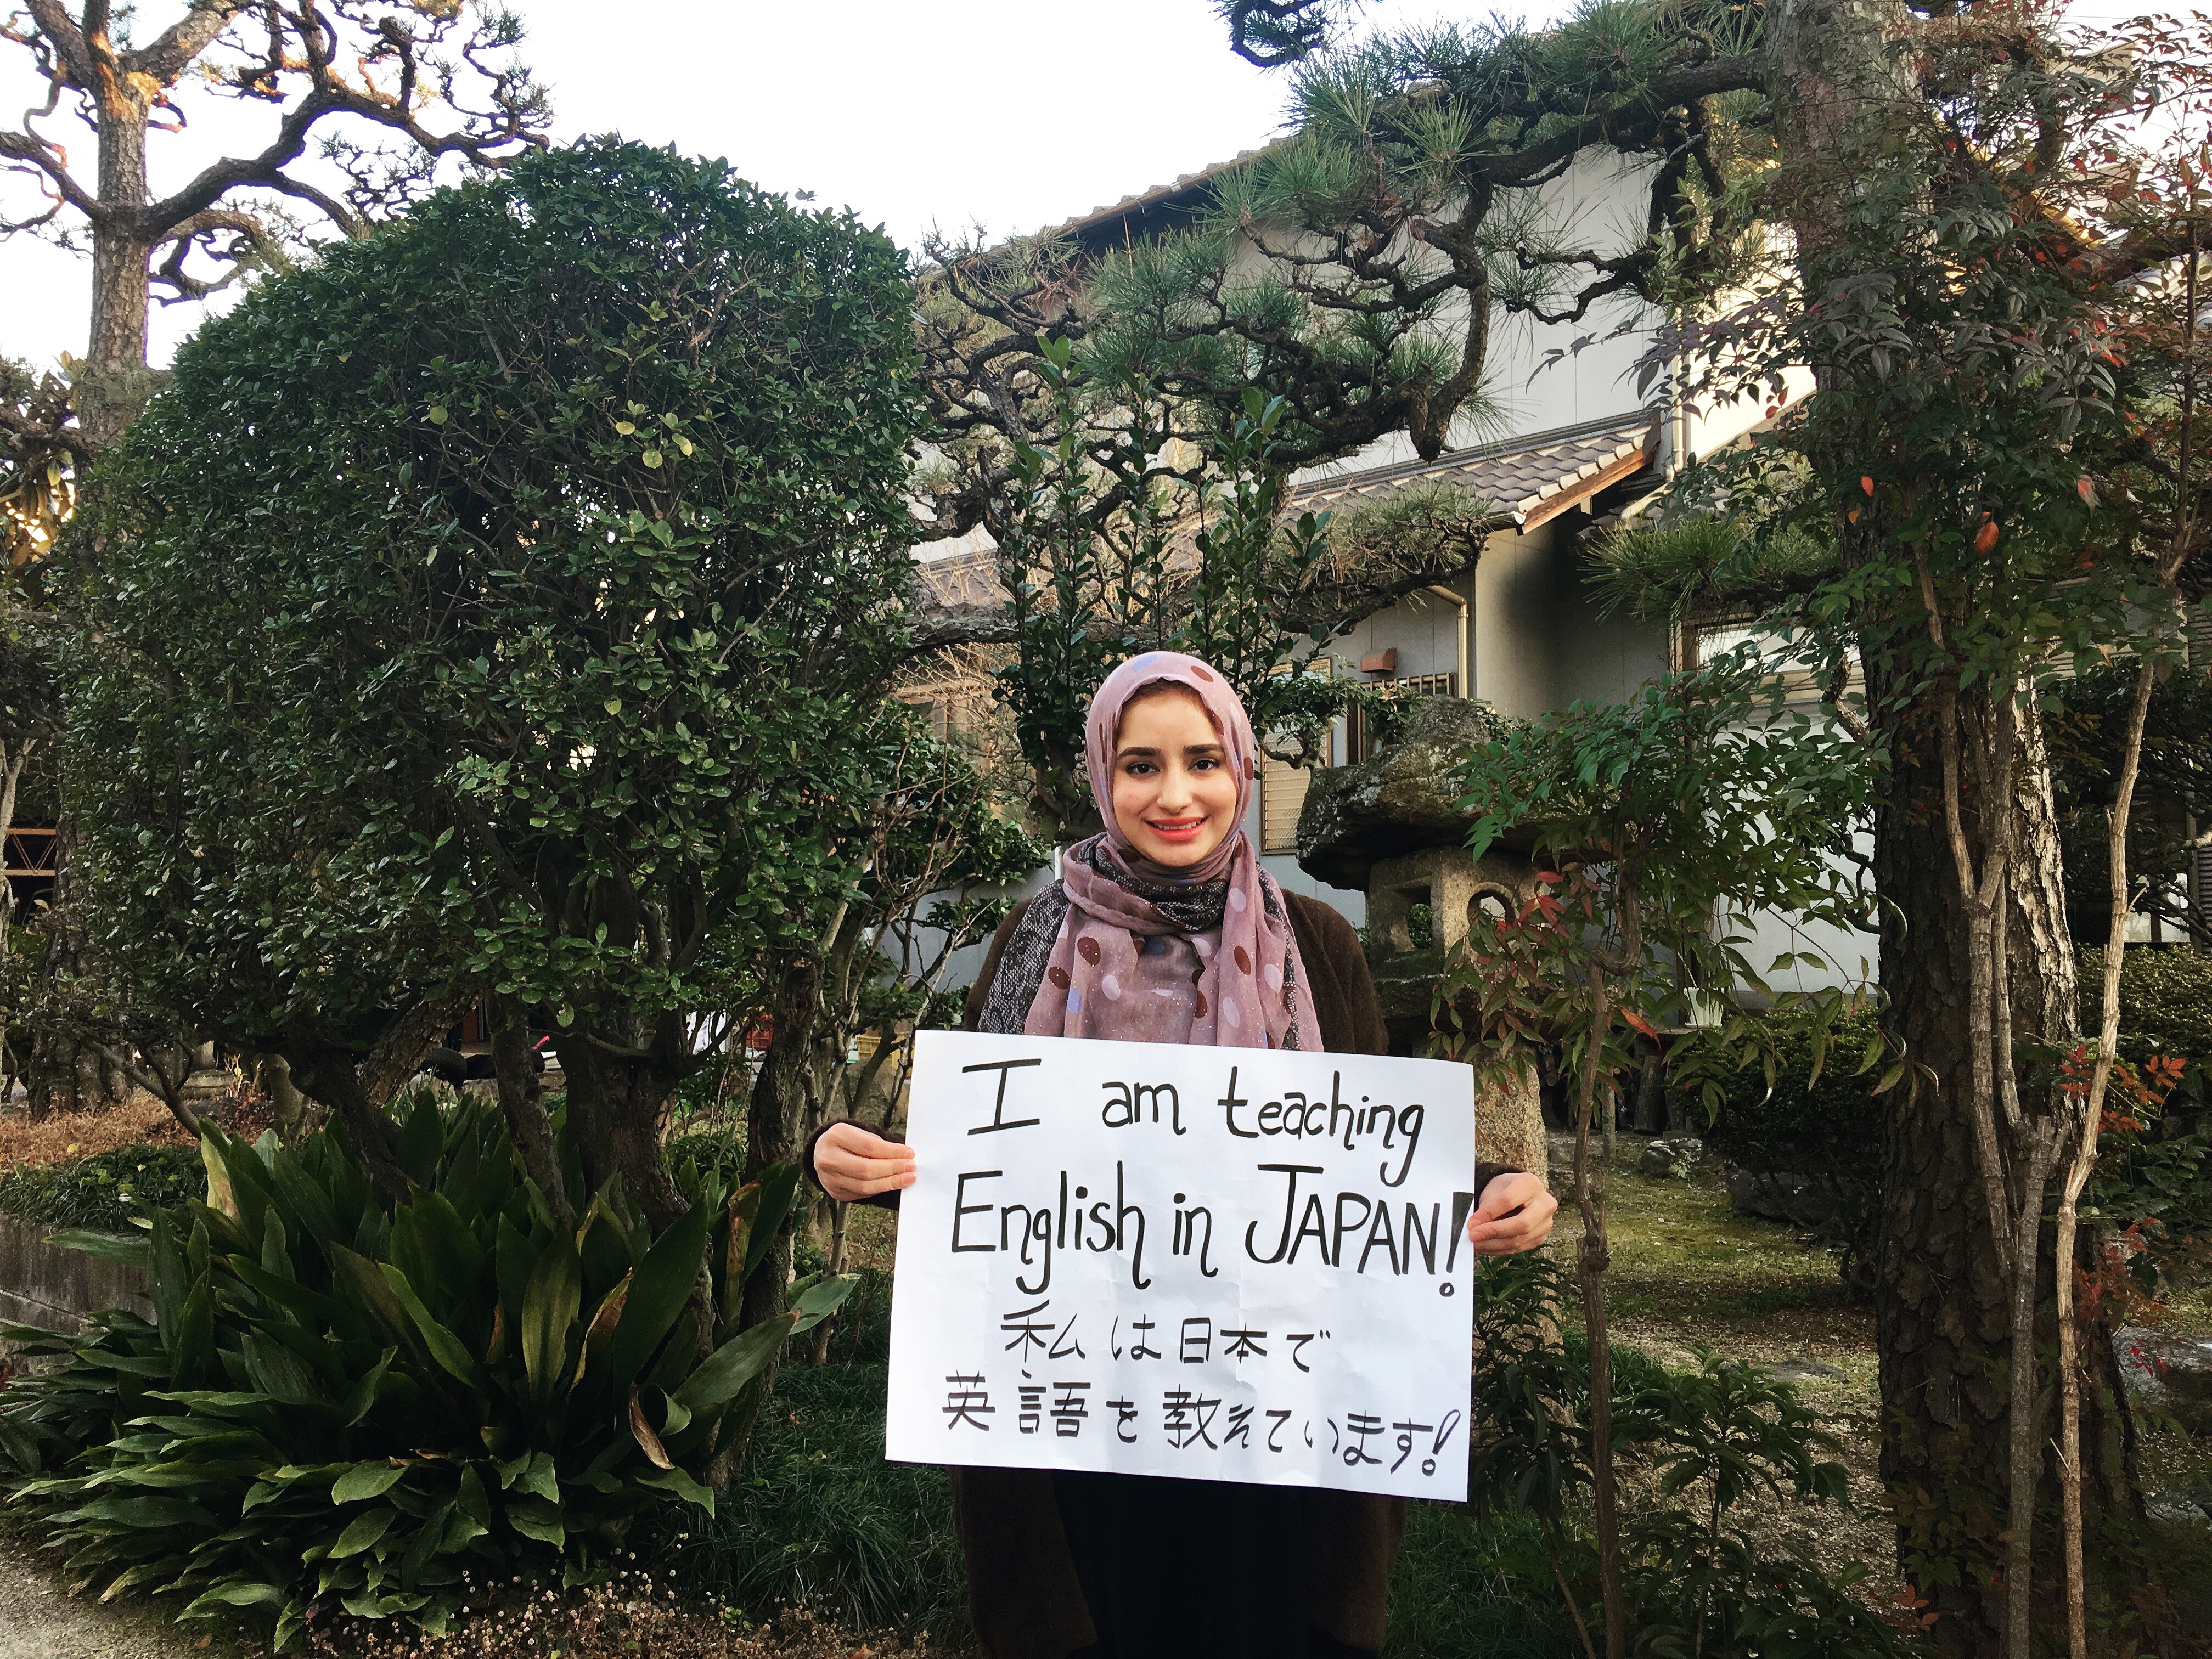 Life as a Muslim in Japan